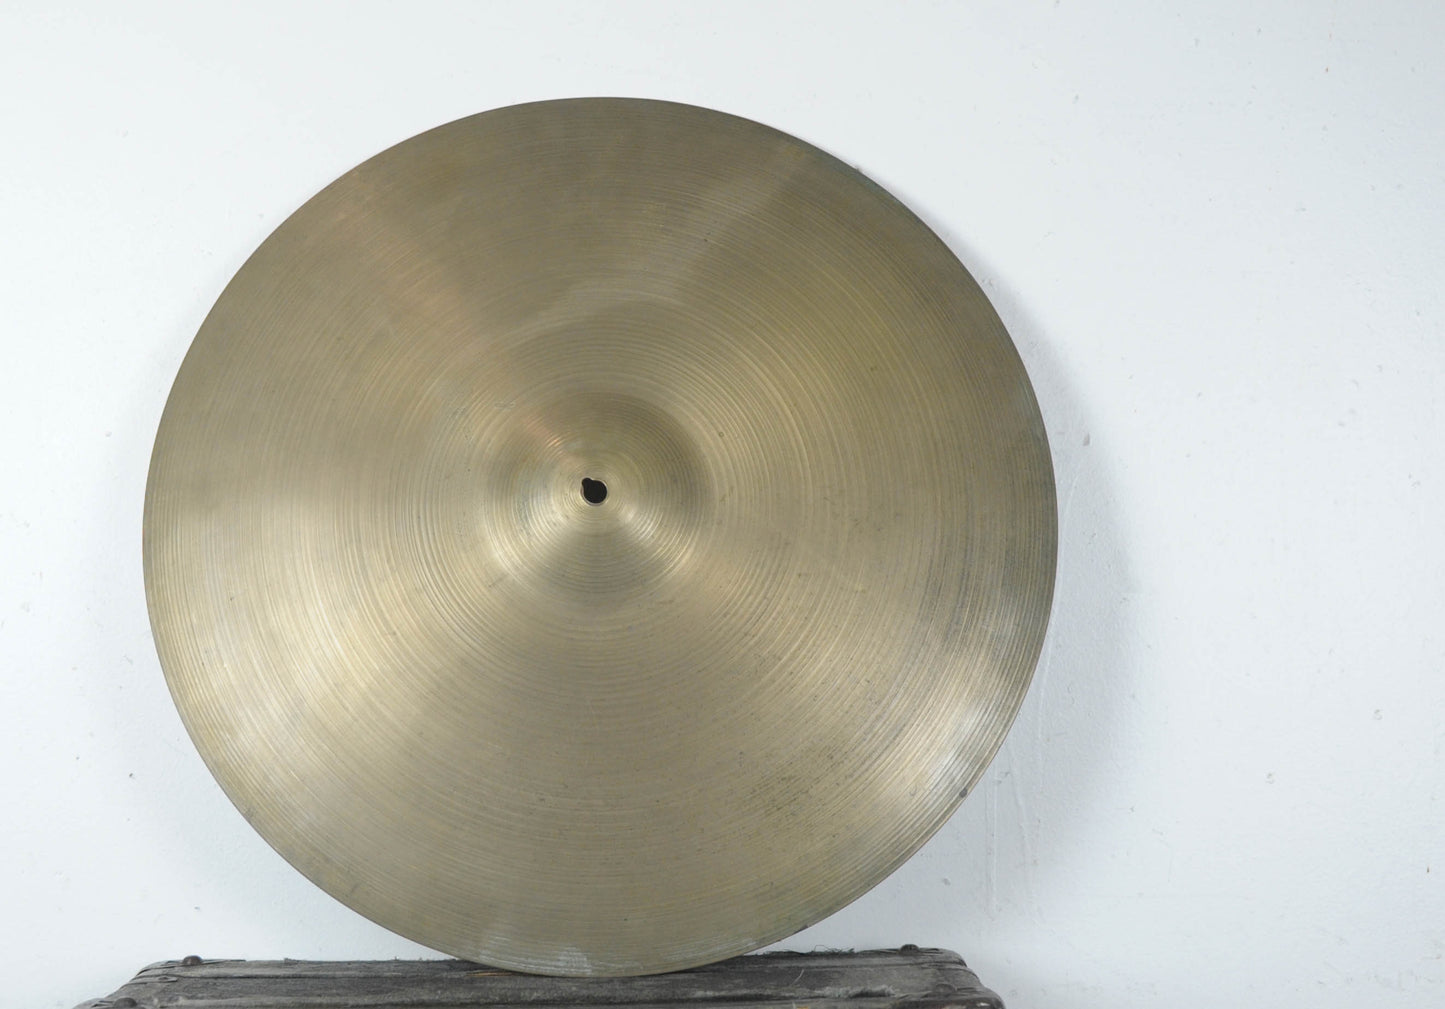 1960s Zildjian A 20" Ride Cymbal 2120g